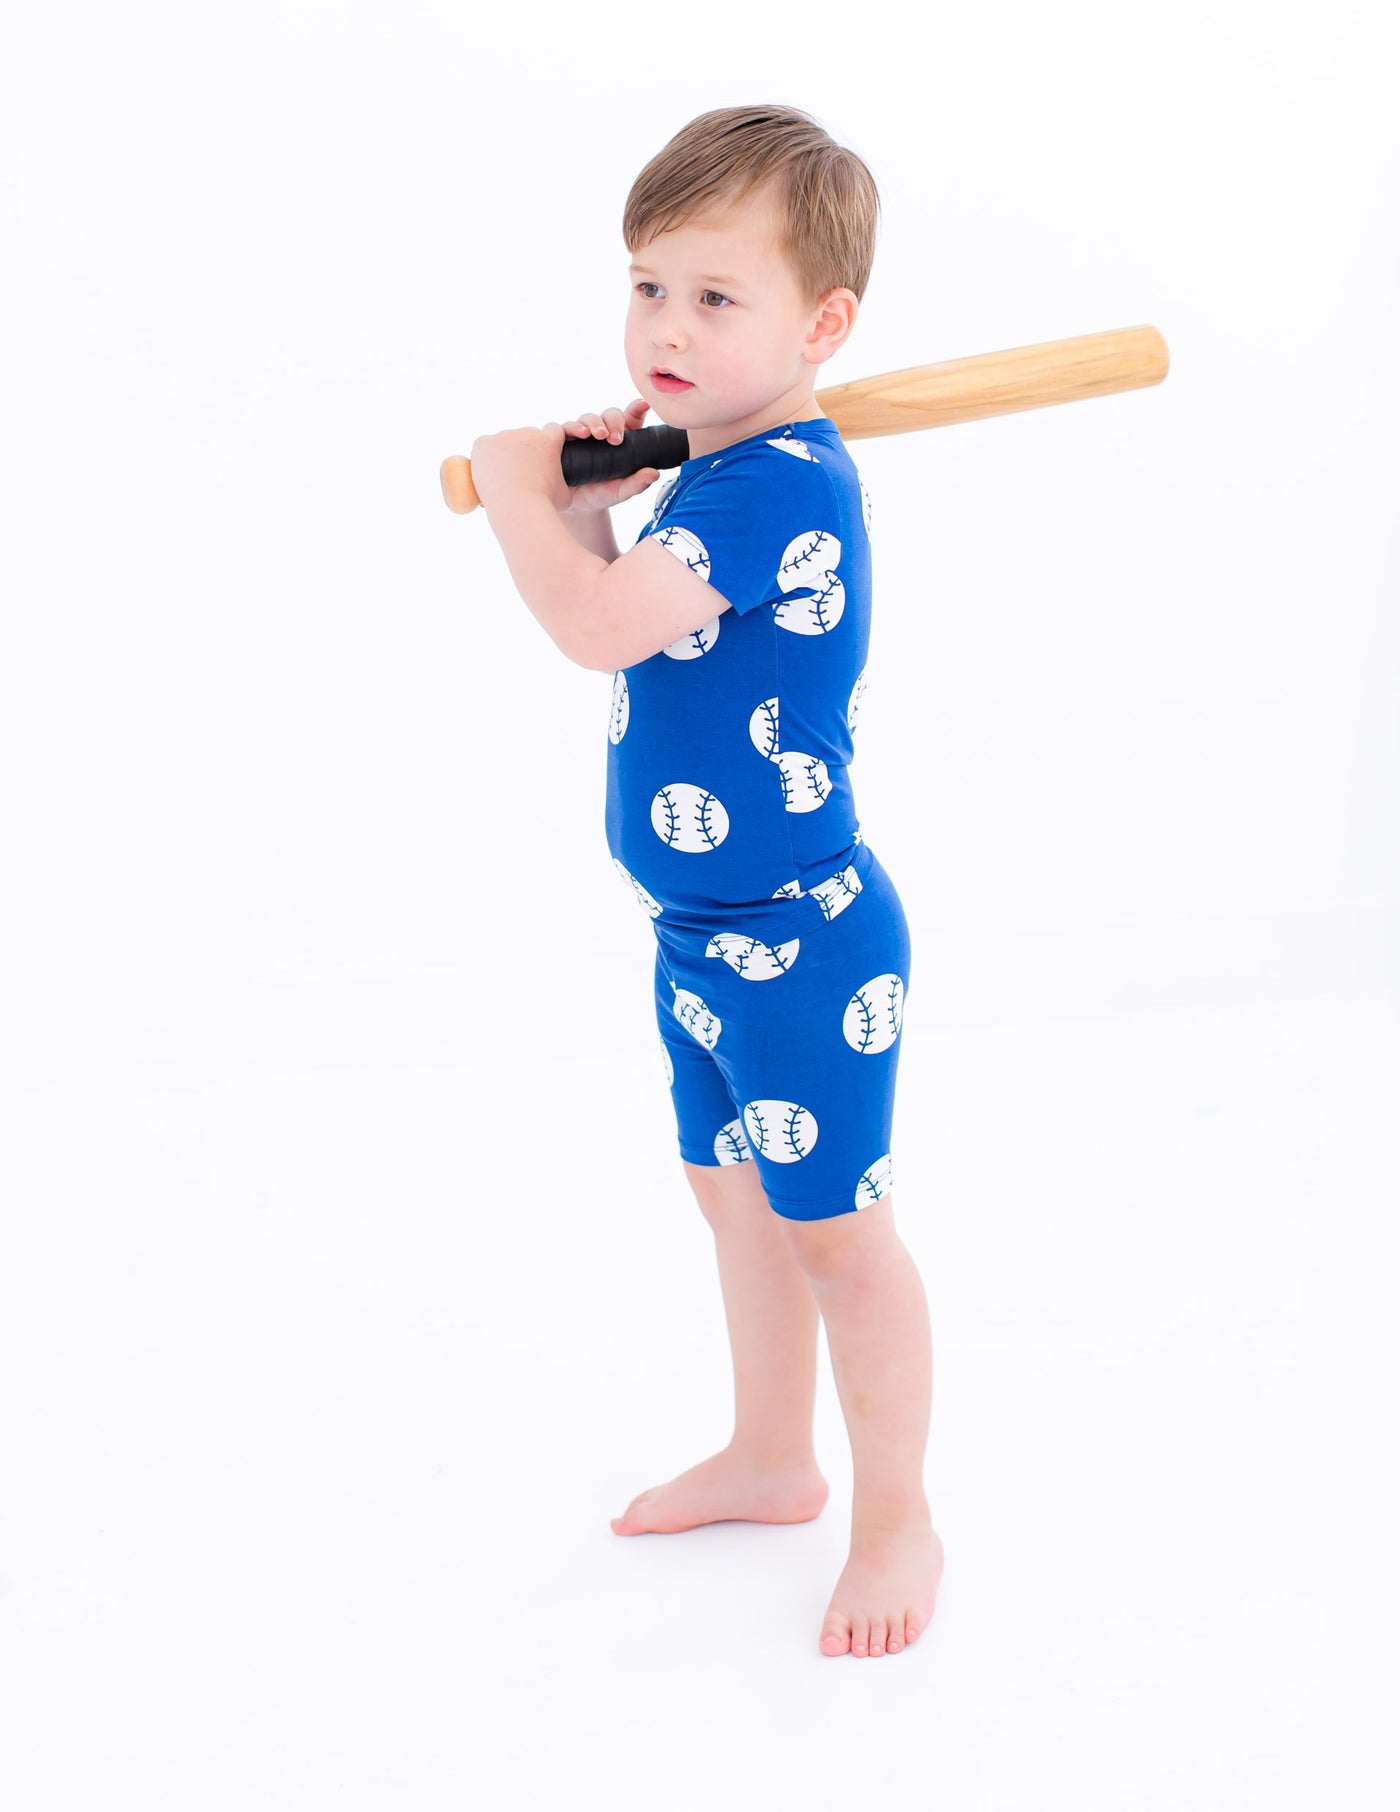 Baseball 2-piece pajamas- BLUE